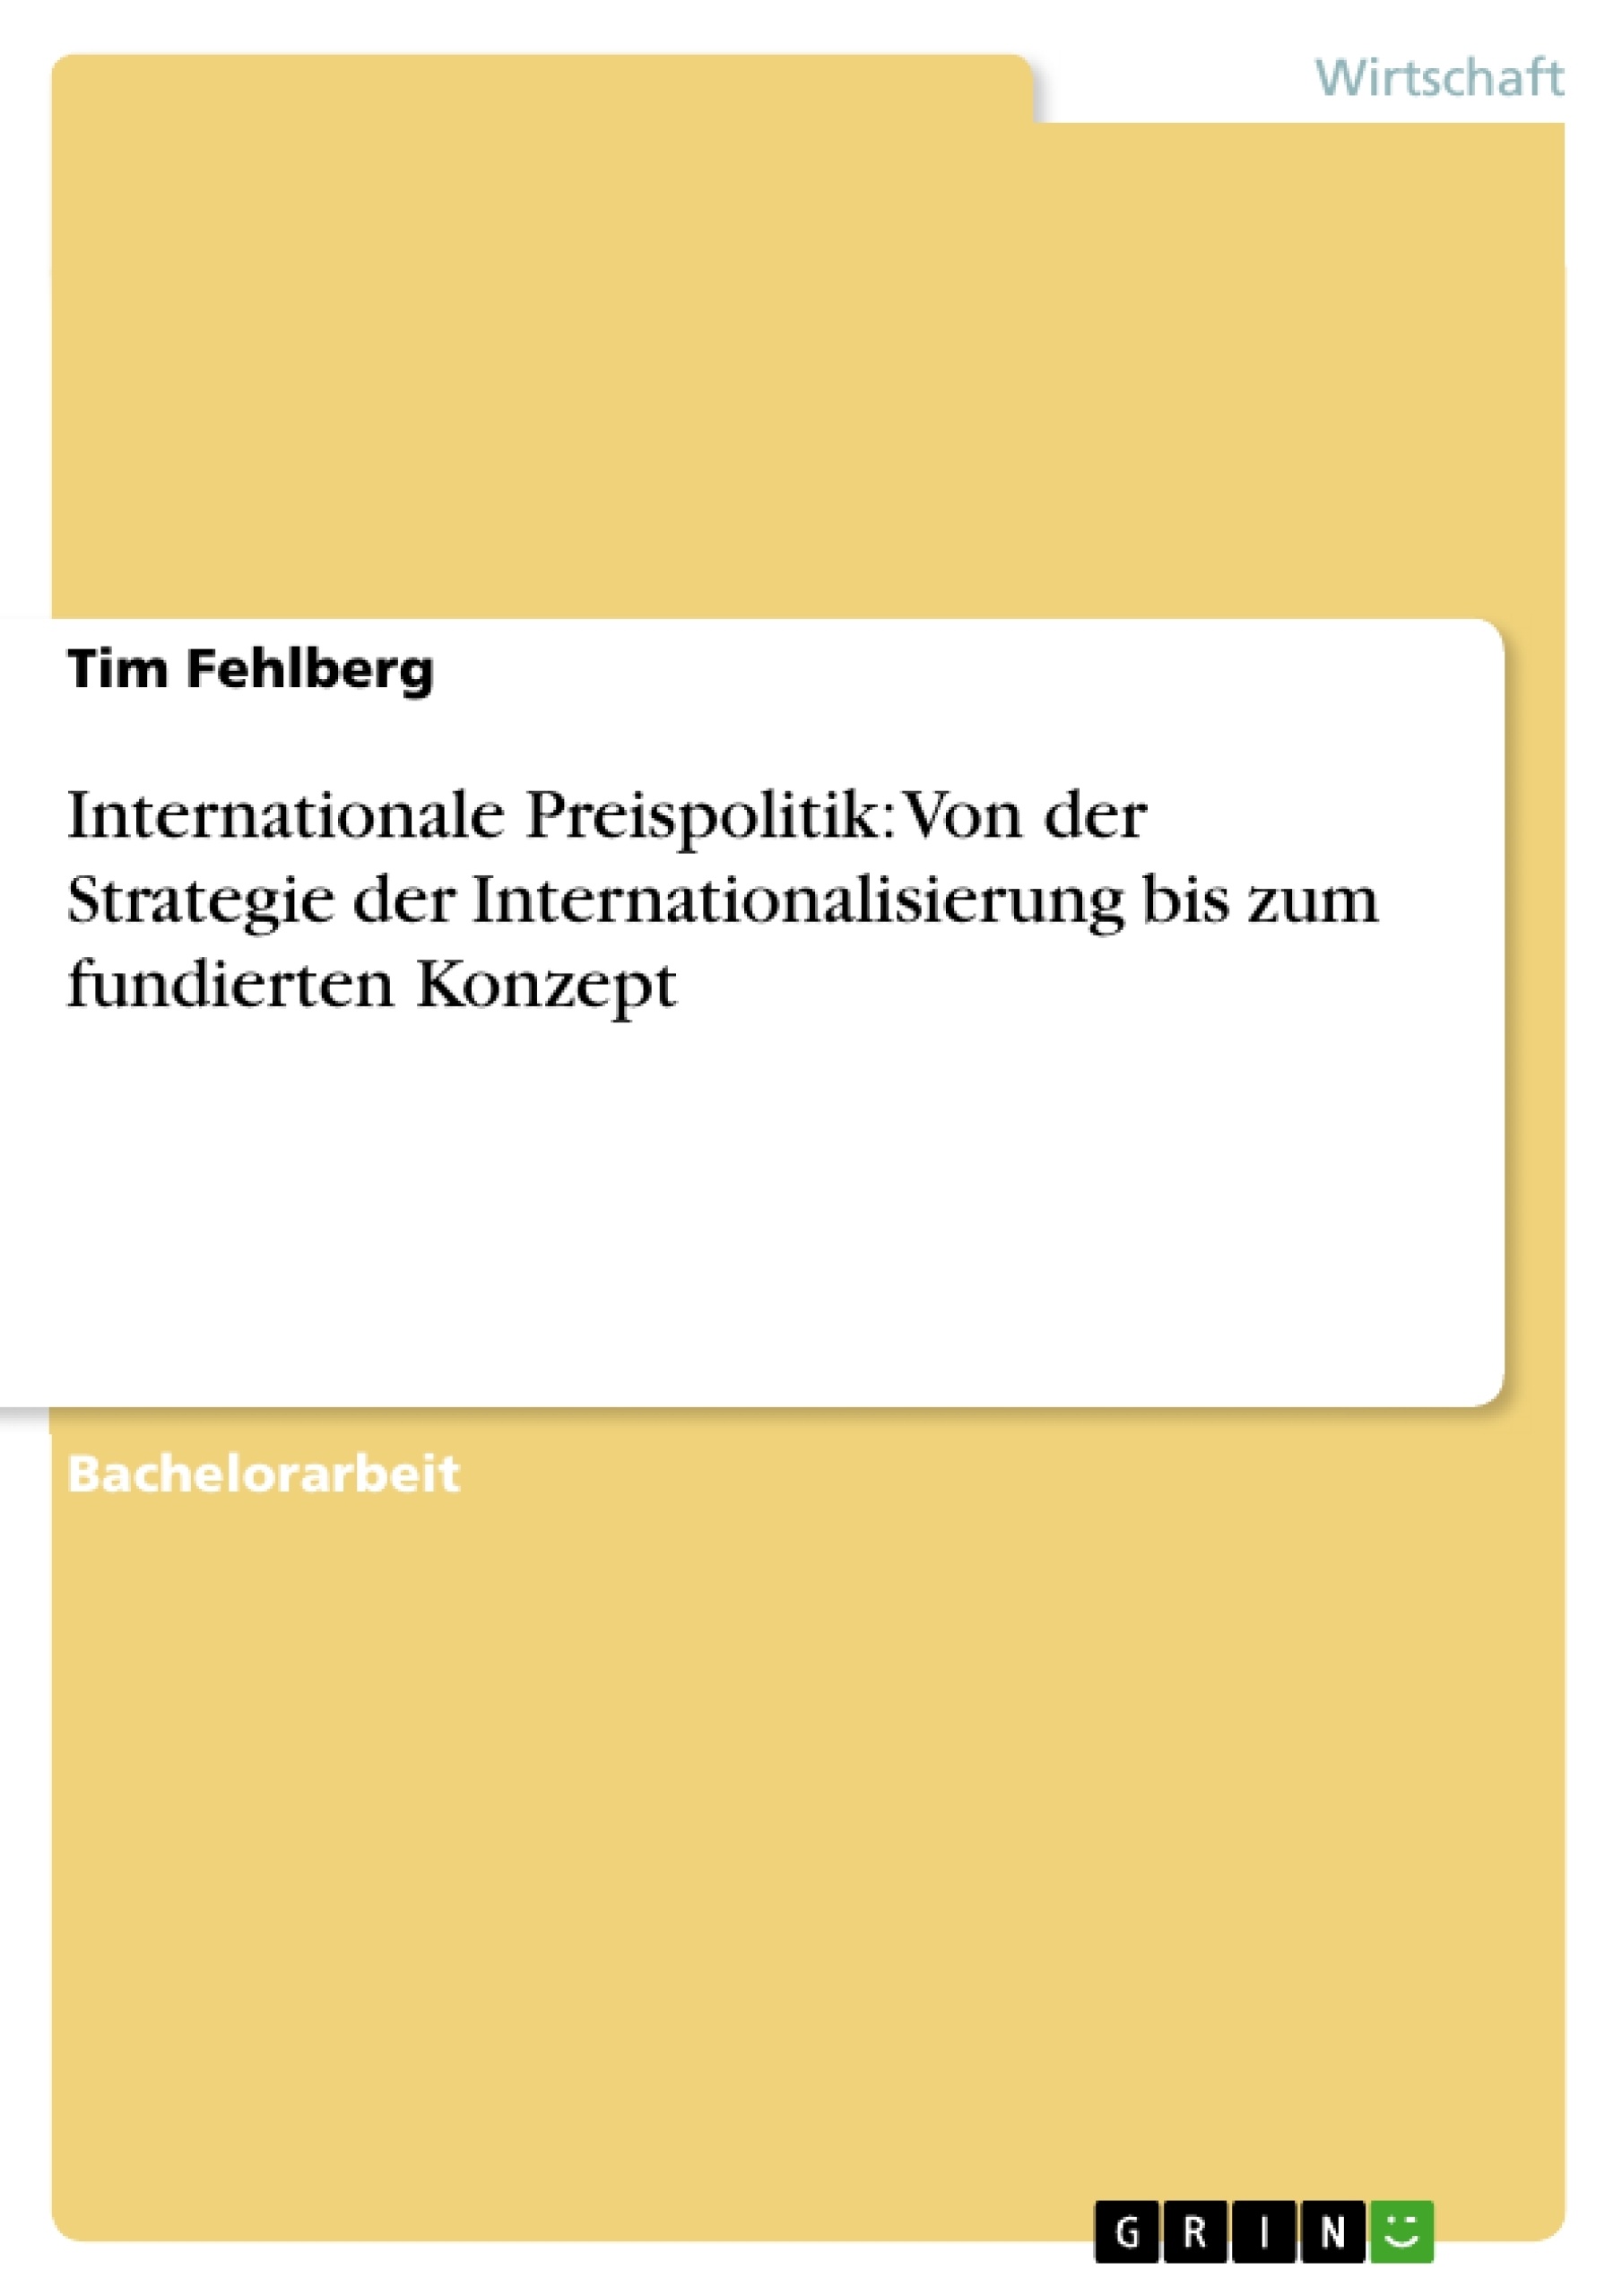 Titre: Internationale Preispolitik: Von der Strategie der Internationalisierung bis zum fundierten Konzept